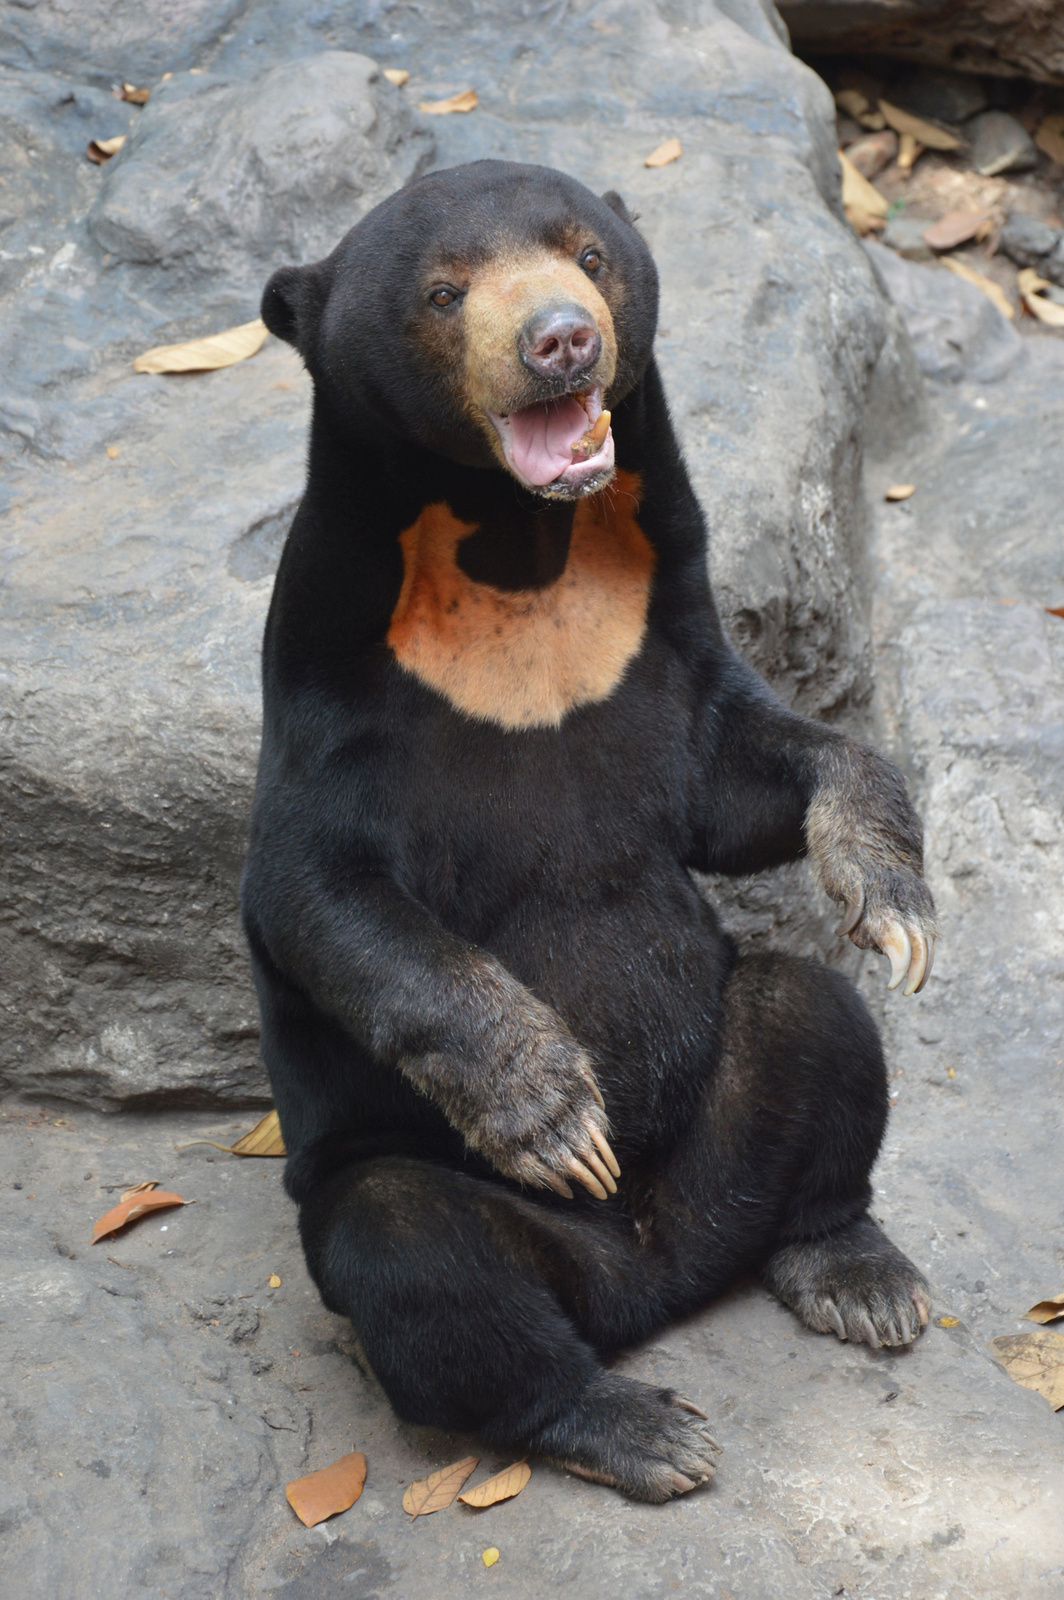 217 Saigon állatkert Ázsiai medvefajtának melege van